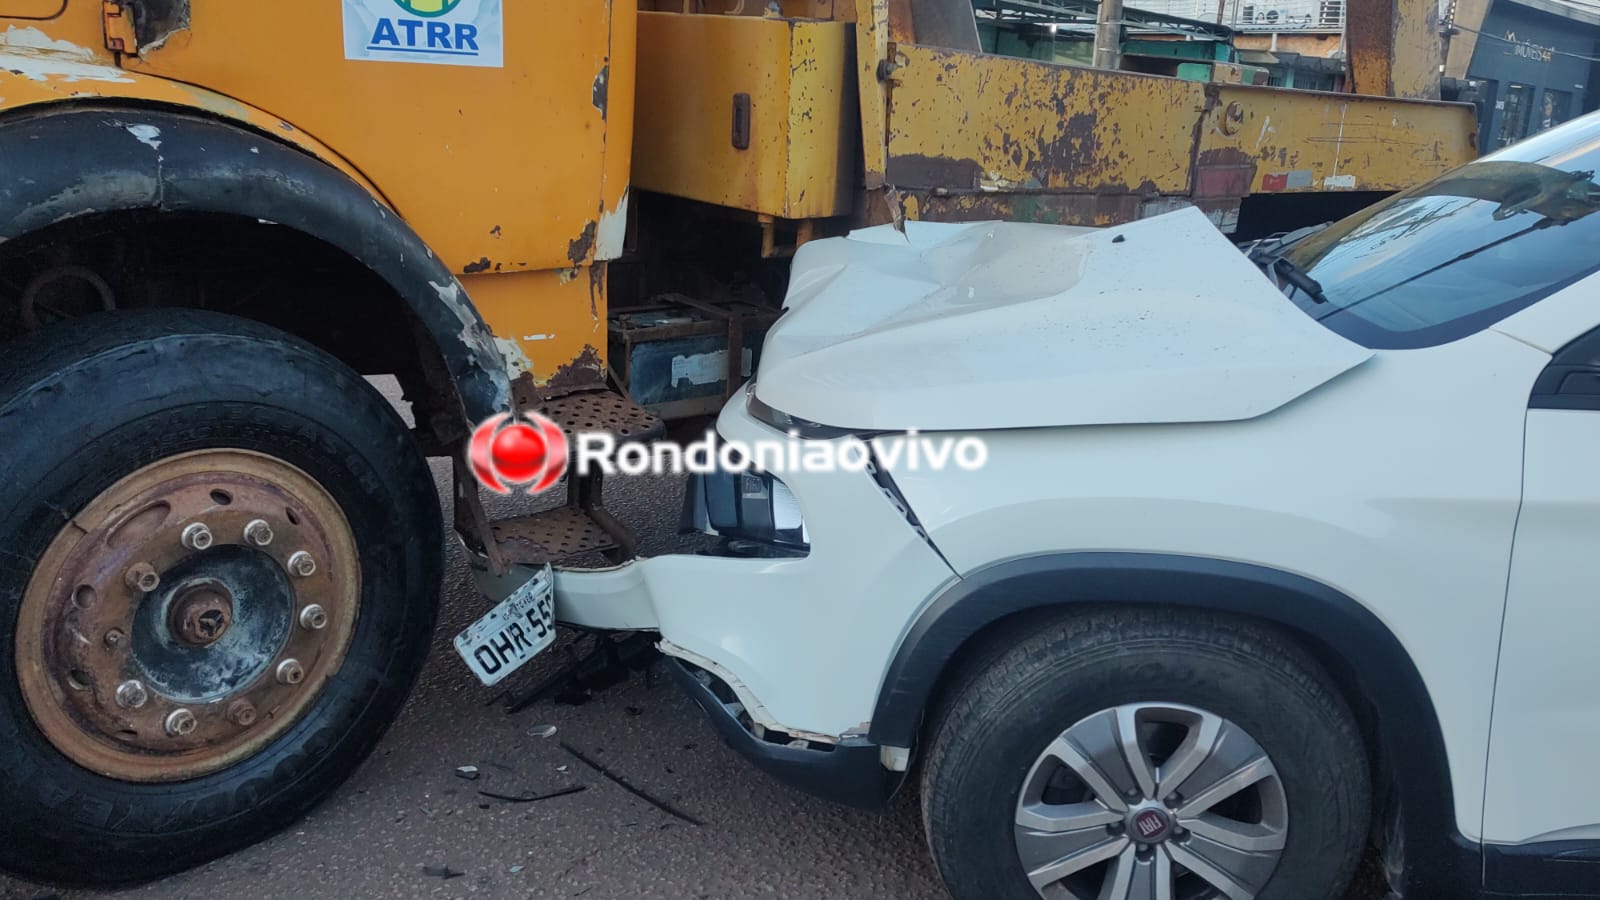 VÍDEO: Fiat Toro fica destruída em batida contra caminhão